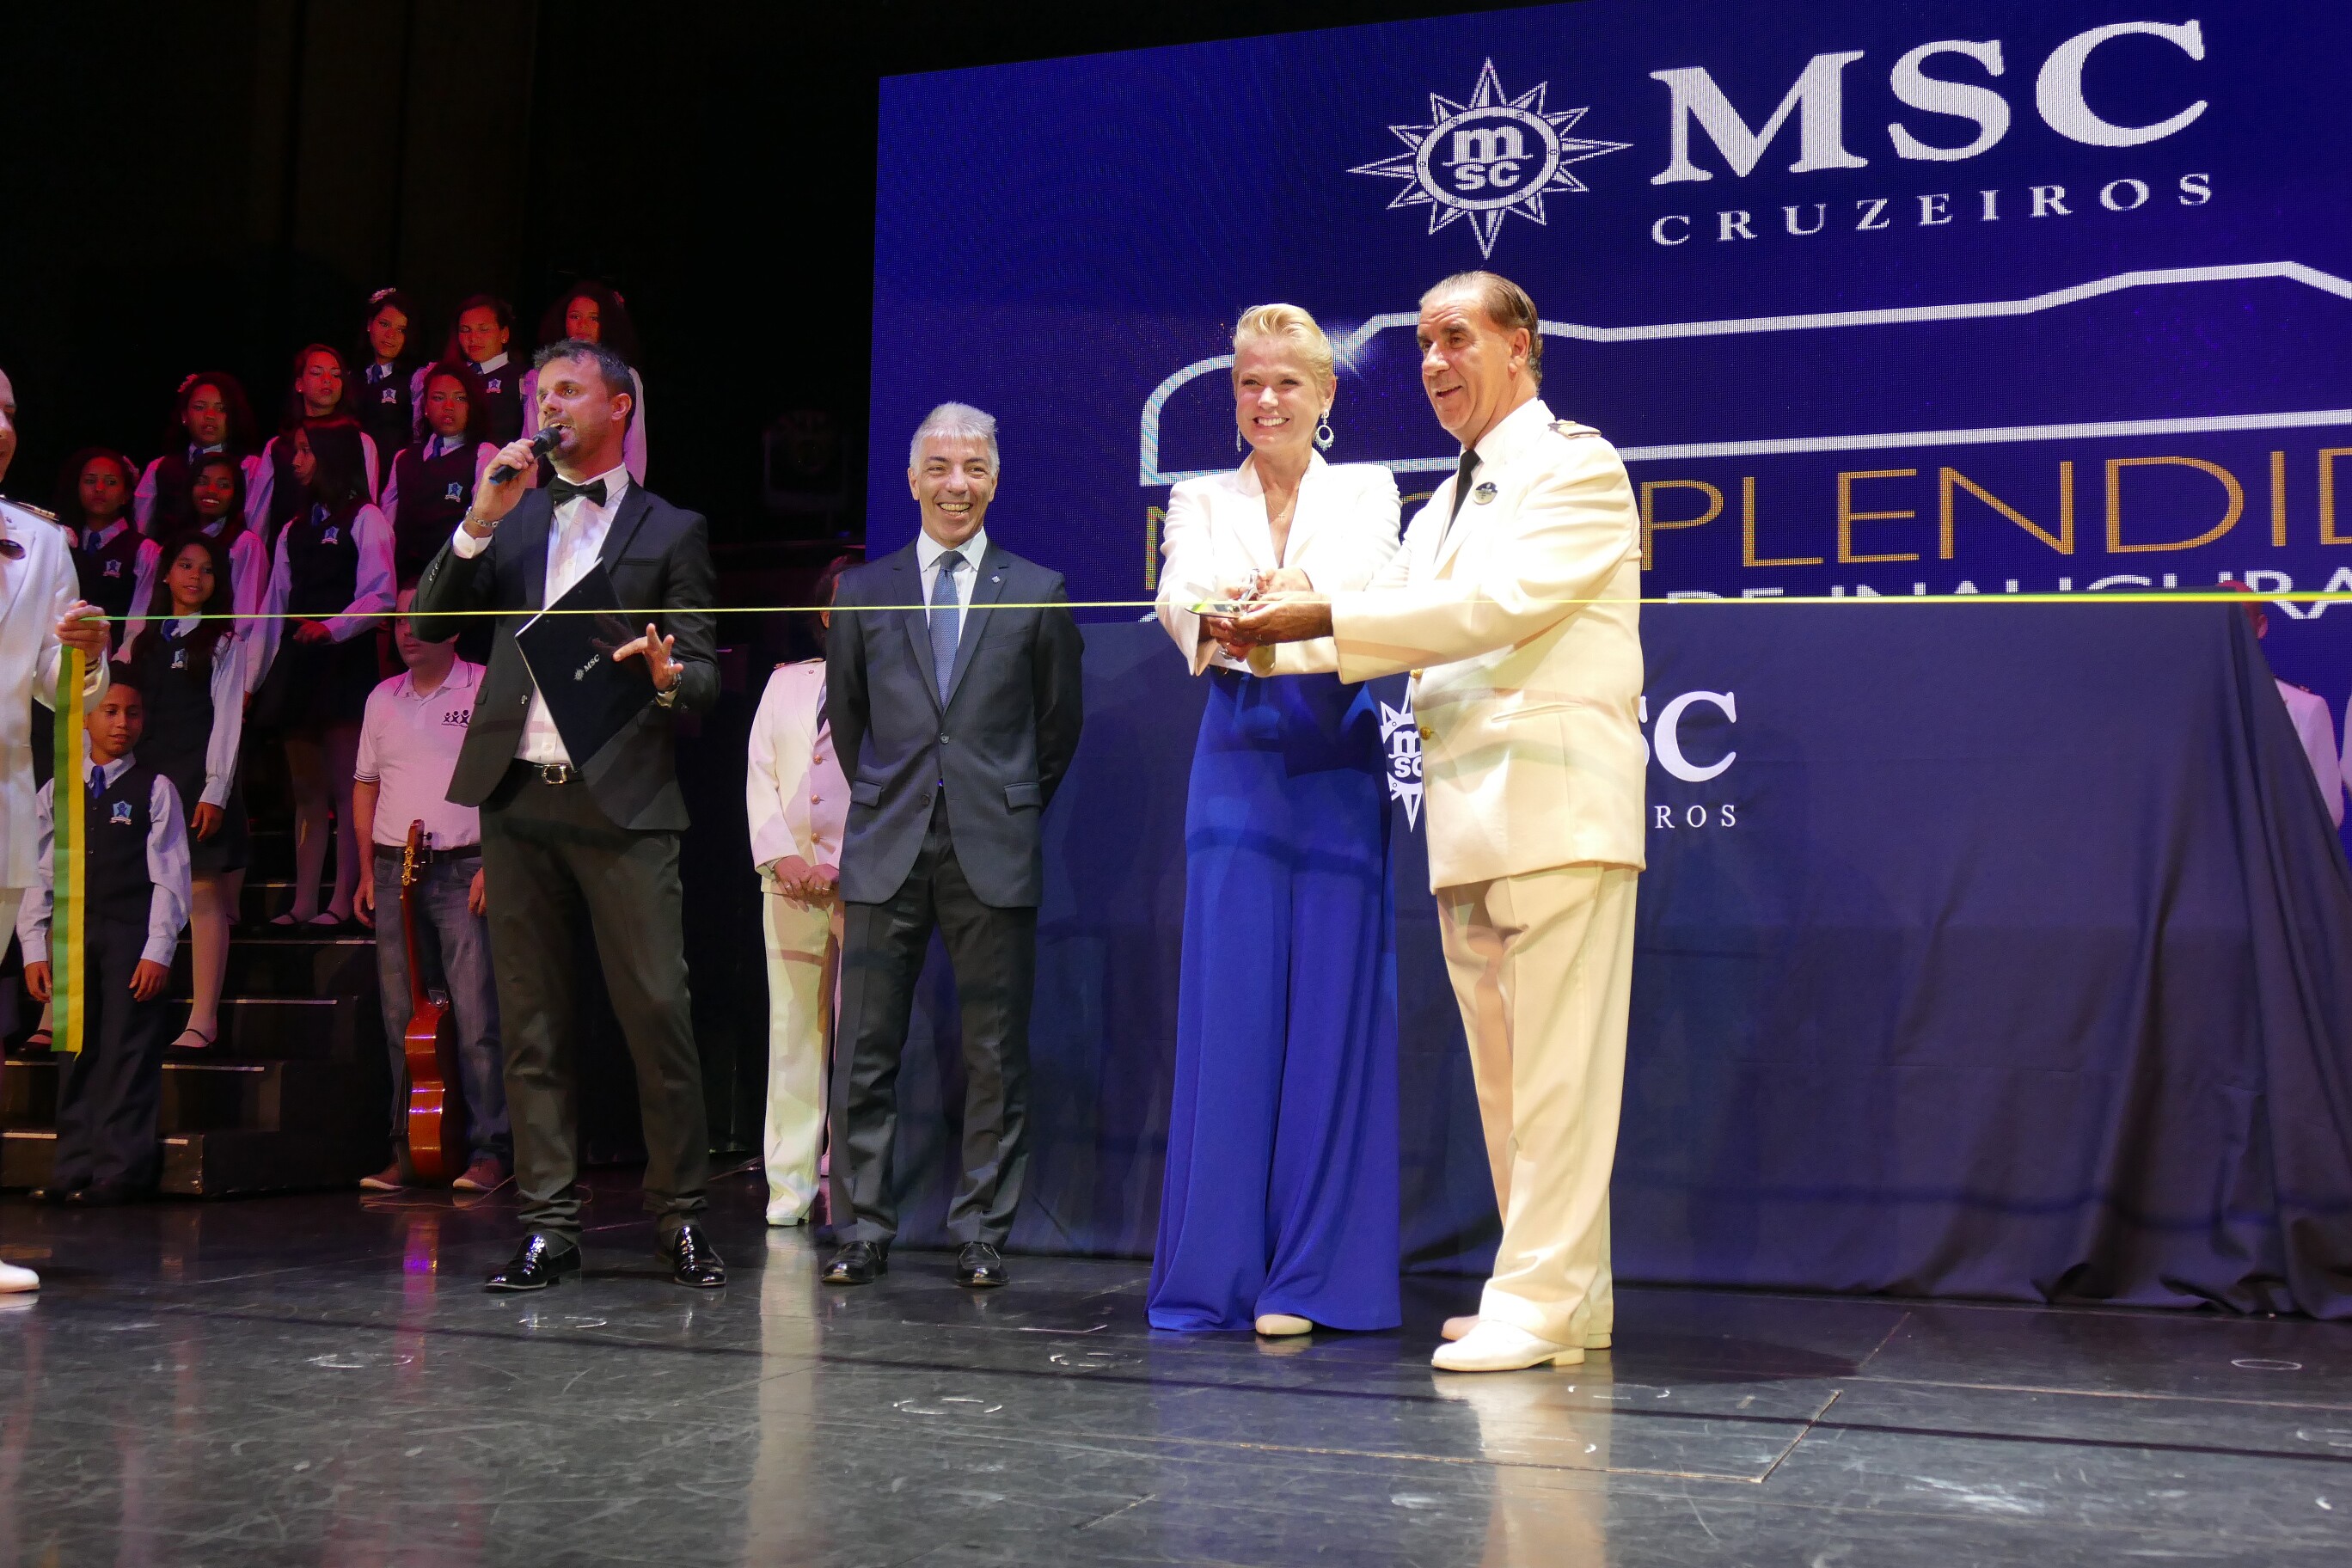 Xuxa e o capitão do MSC Splendida cortando a faixa inaugural